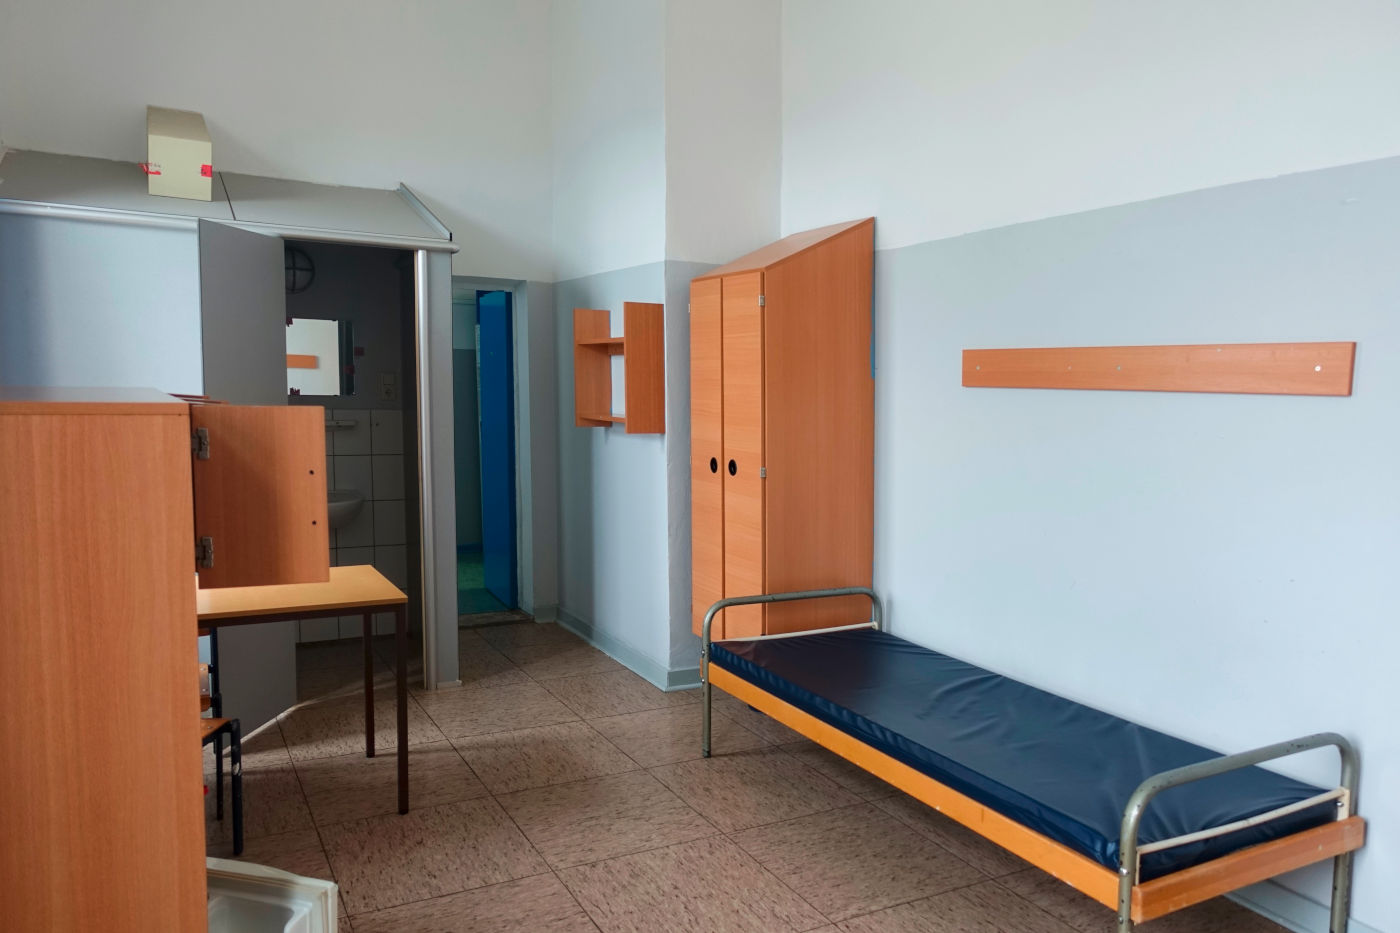 Lebensraum für zwei inhaftierte Frauen, 2021 (Vogl)